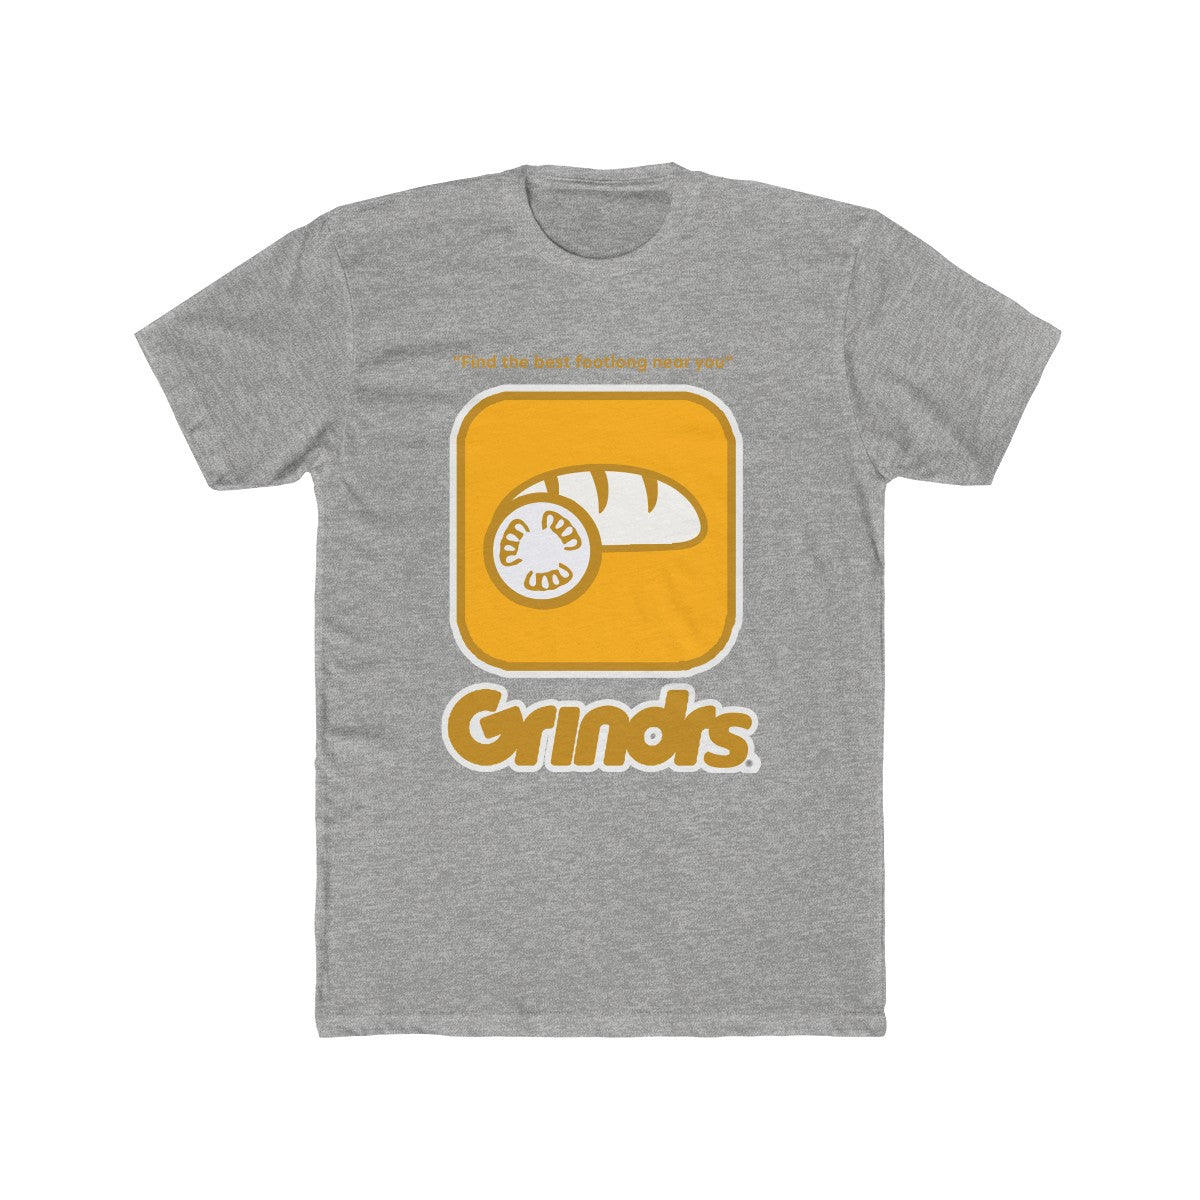 Grindr App Funny Parody Grinders Tee